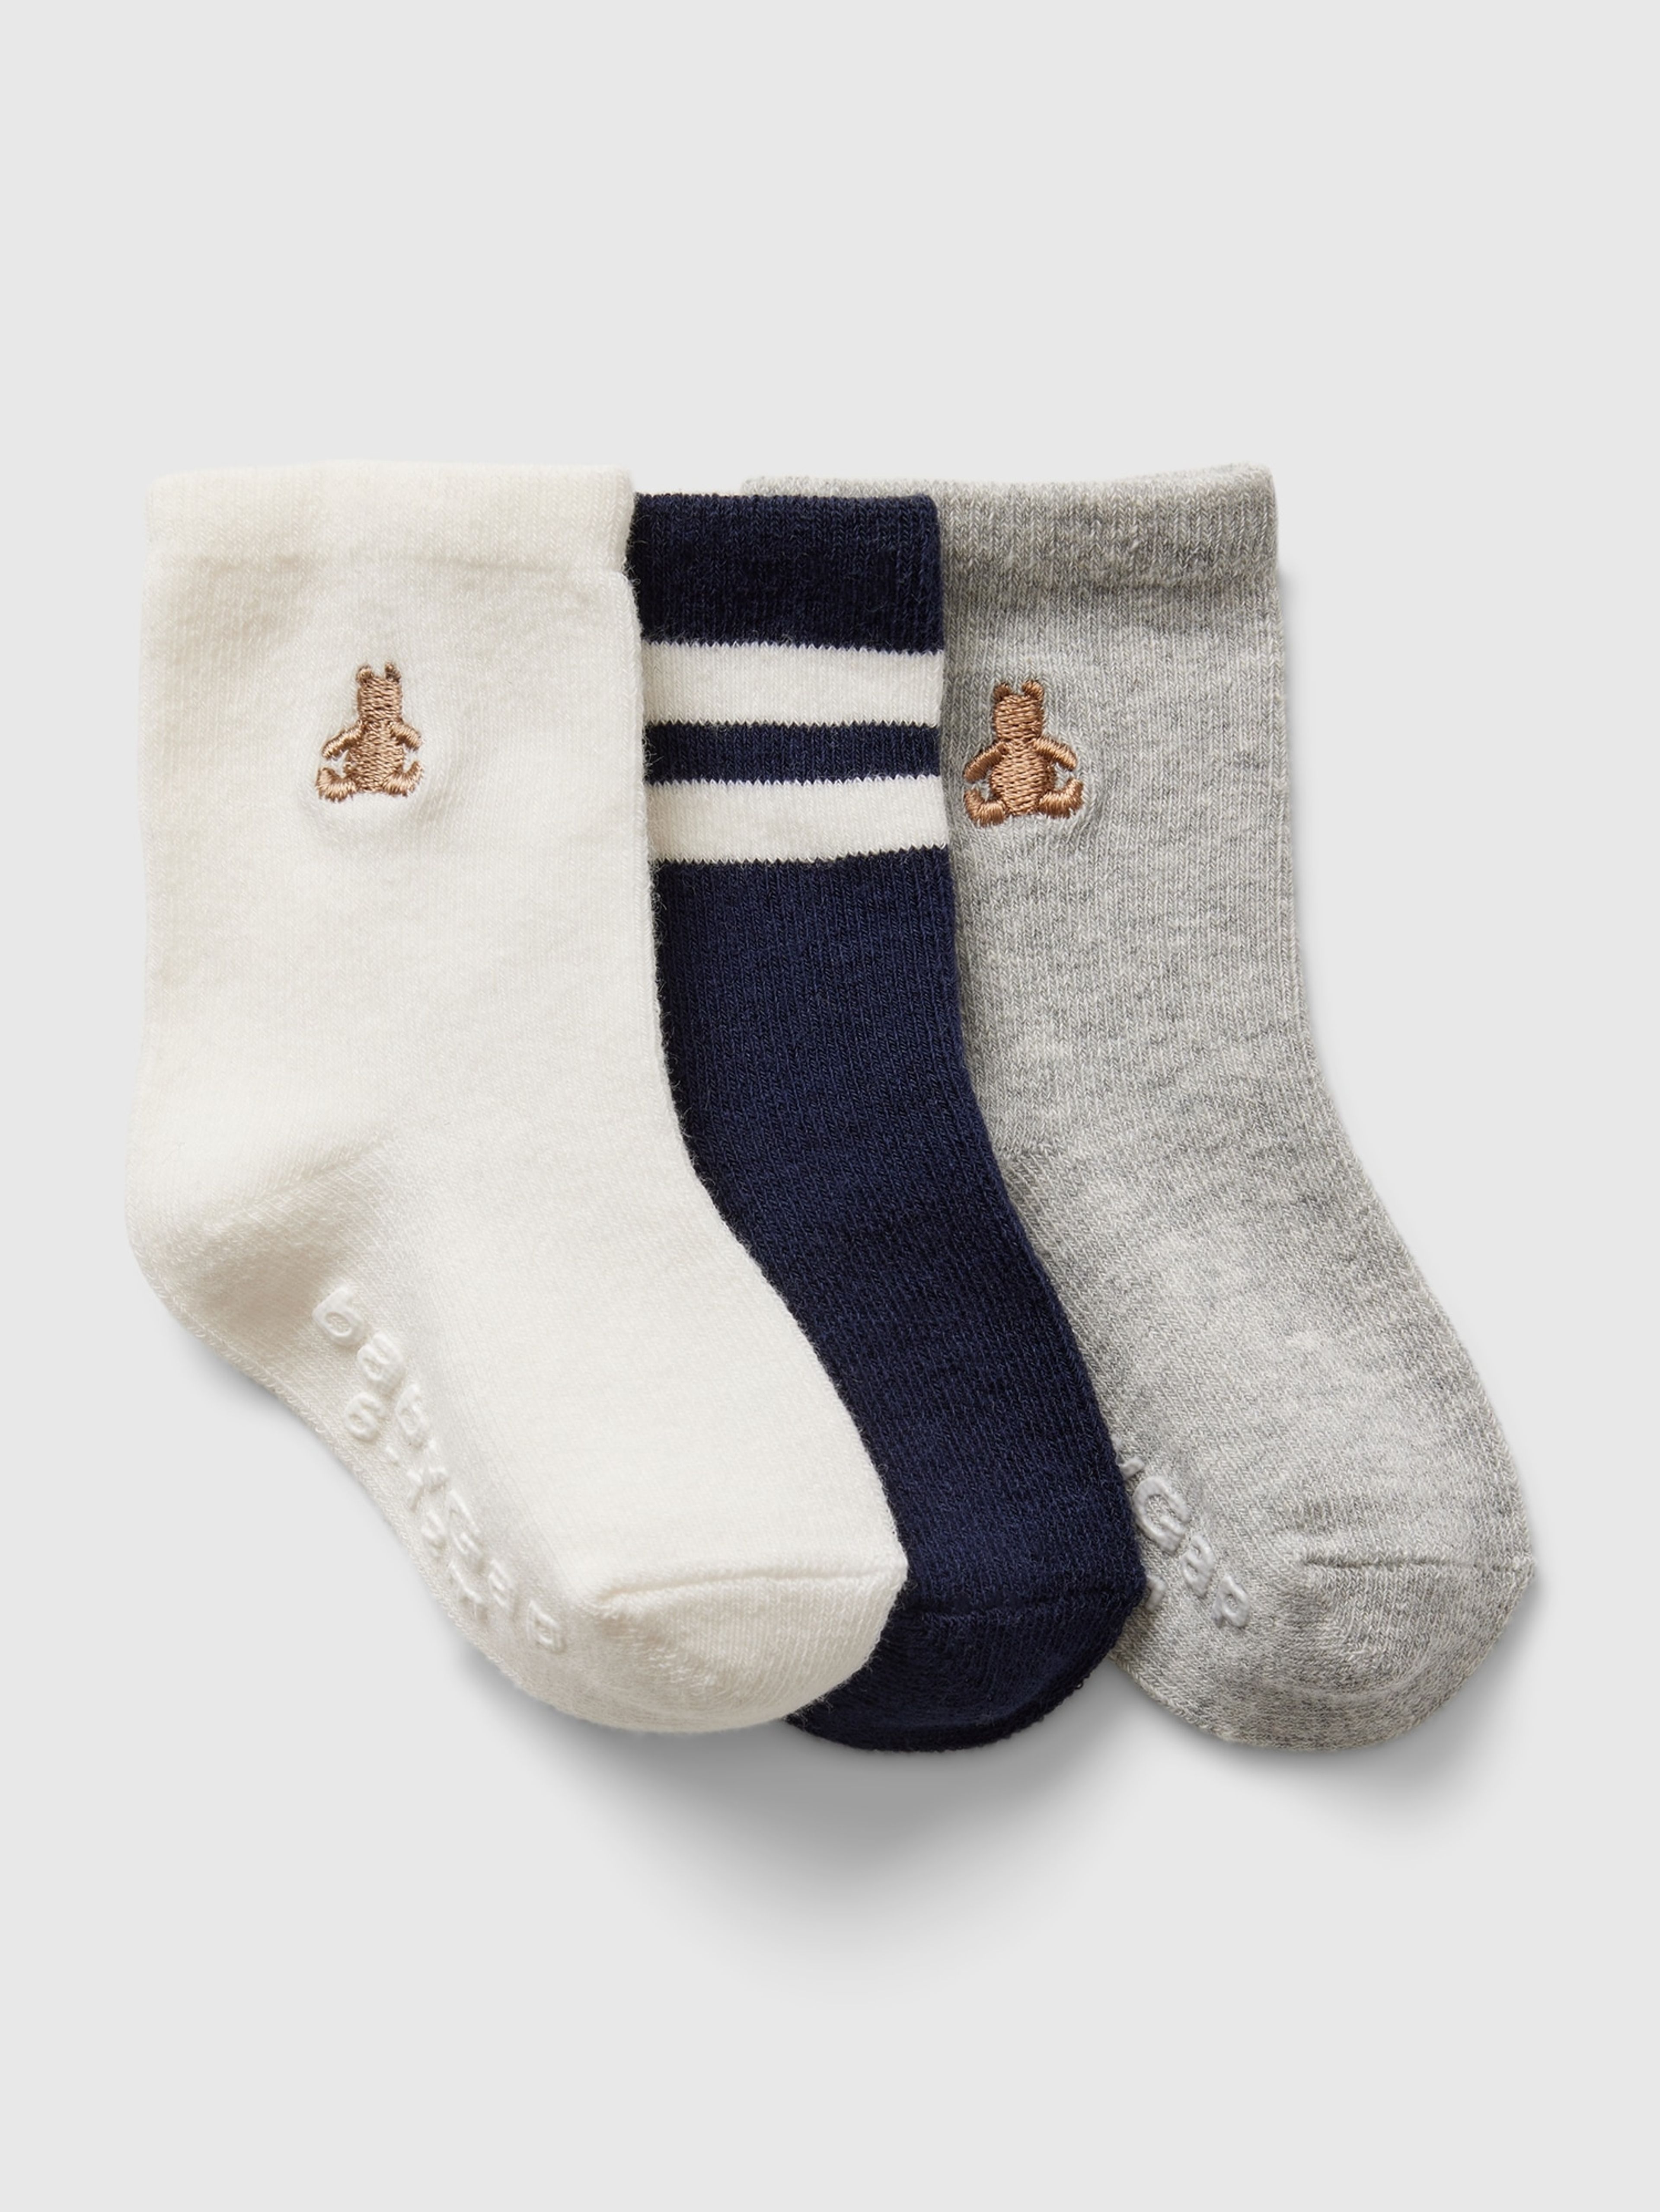 Baby ponožky, 3 páry